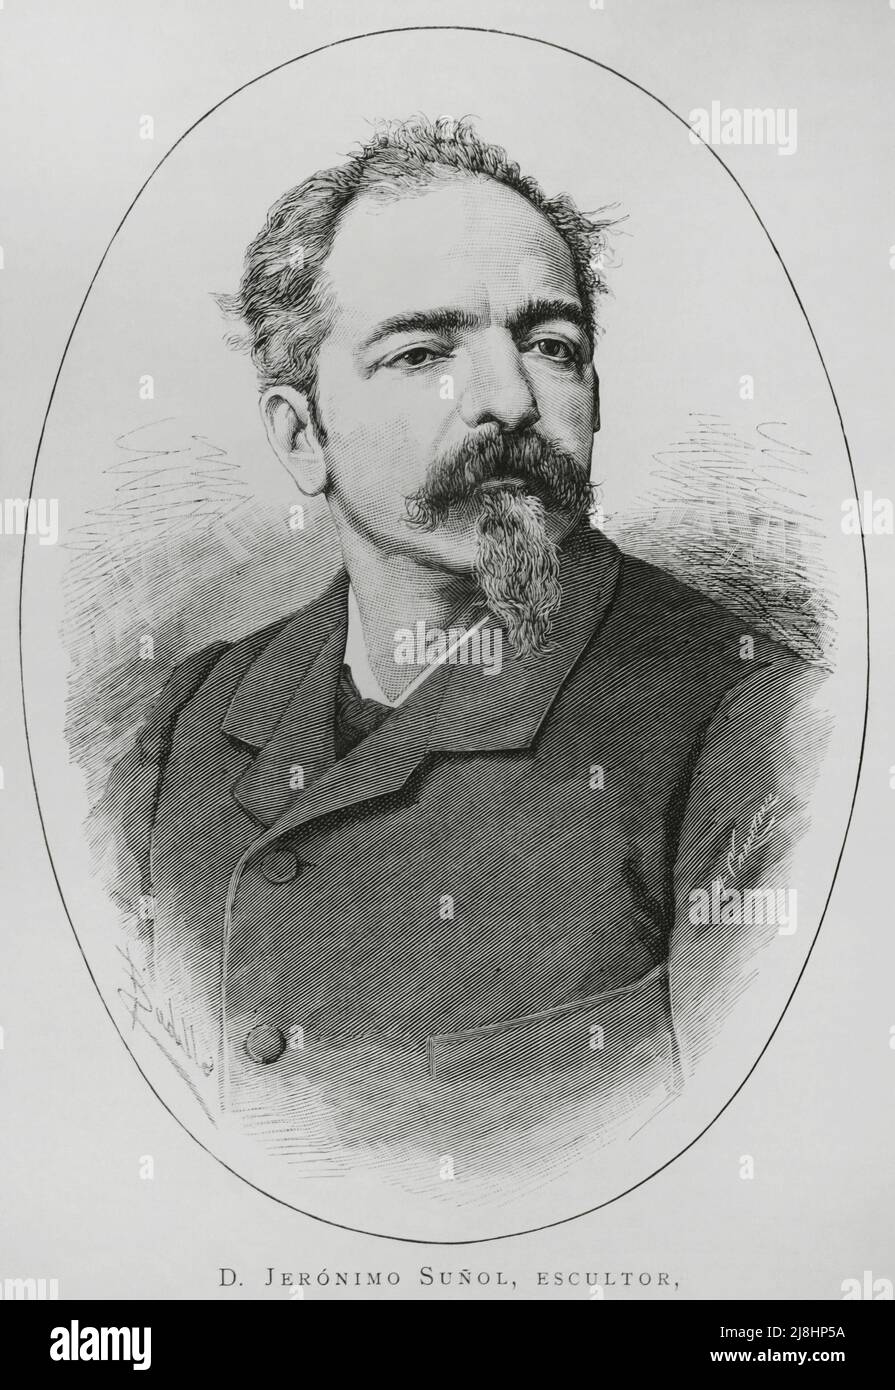 Jerónimo Miguel Suñol y Pujol (1839-1902). Spanish sculptor. Engraving by Carretero, 1882. Stock Photo